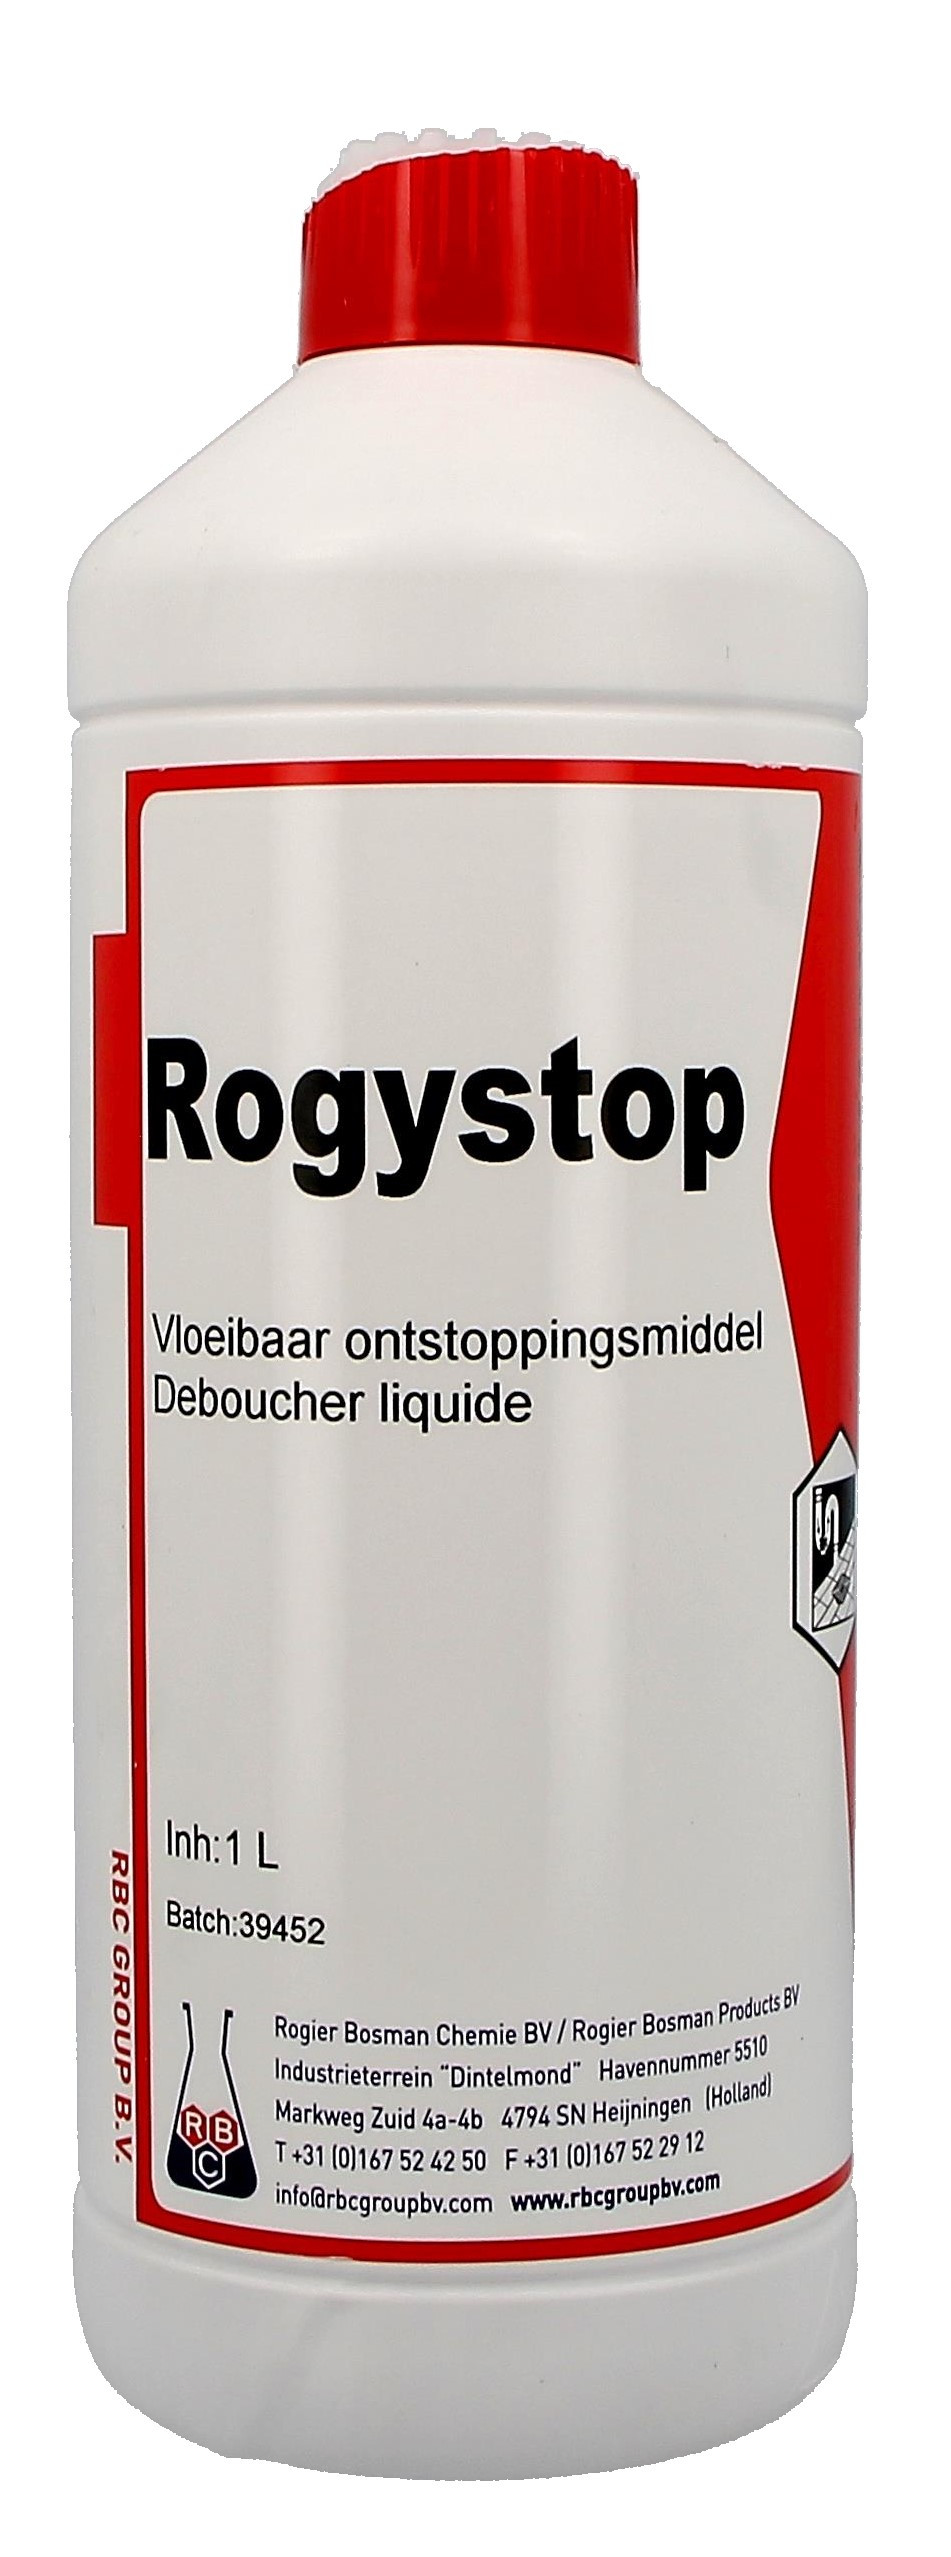 Rogystop Super 1L déboucheur liquide industrielle (Reinigings-&kuisproducten)